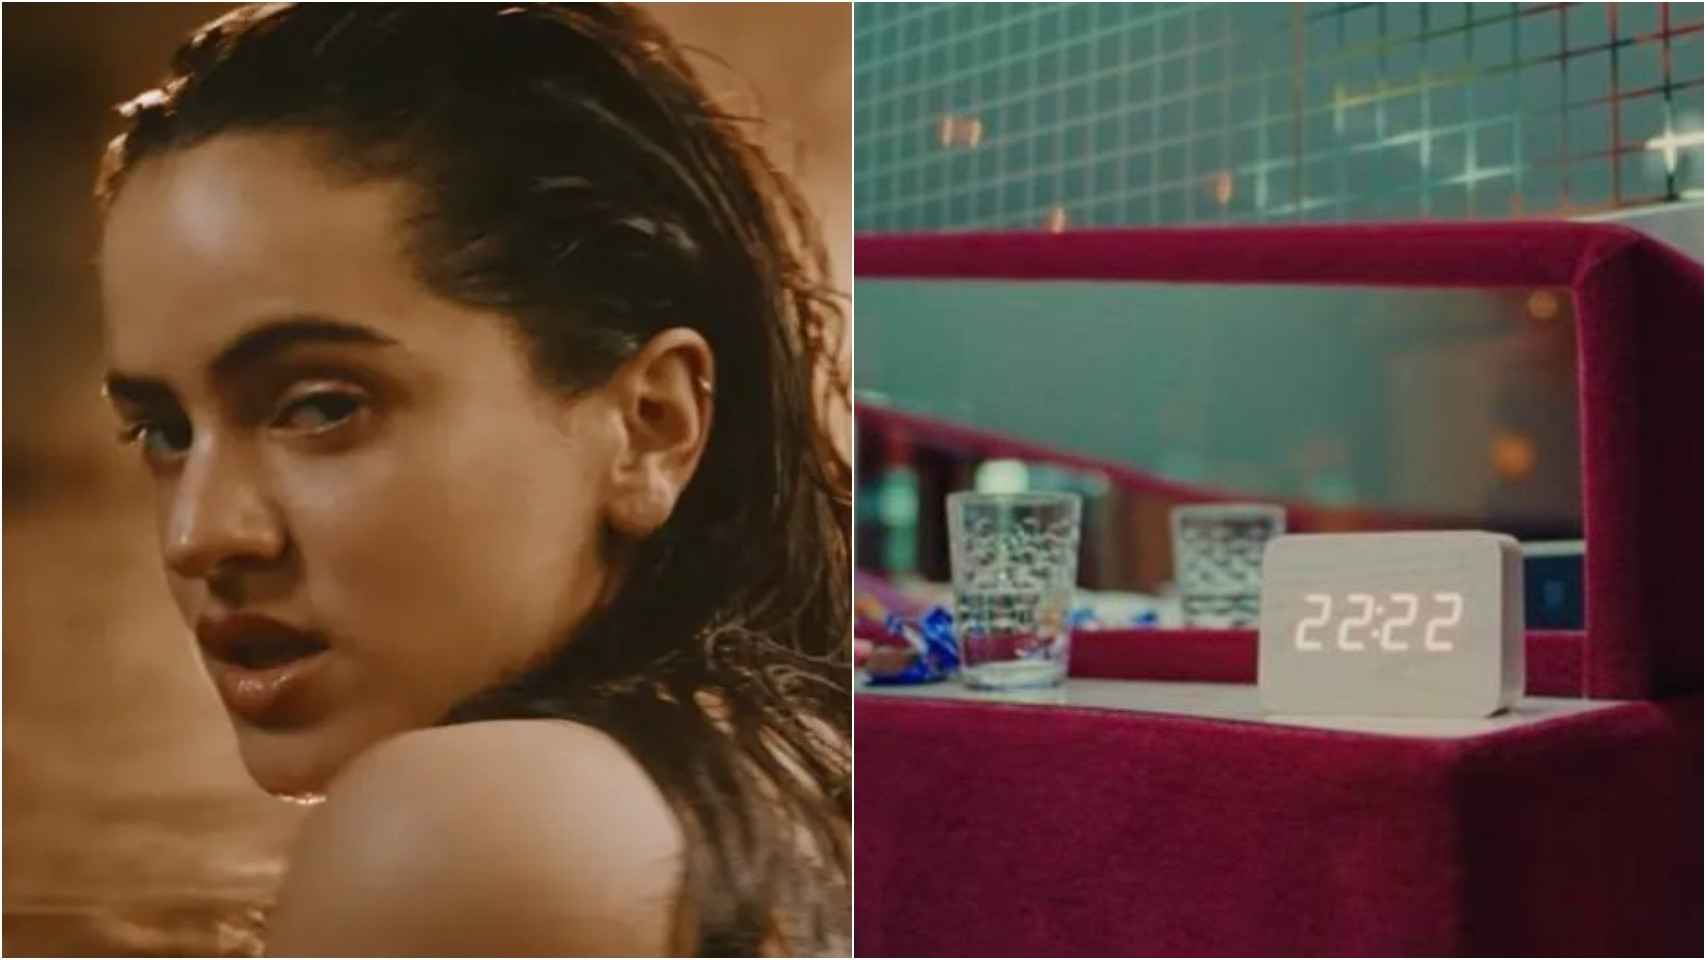 A la izquierda, Rosalía en el videoclip de su última canción 'Tuya'. A la derecha, el misterioso reloj digital que aparece en el videoclip.